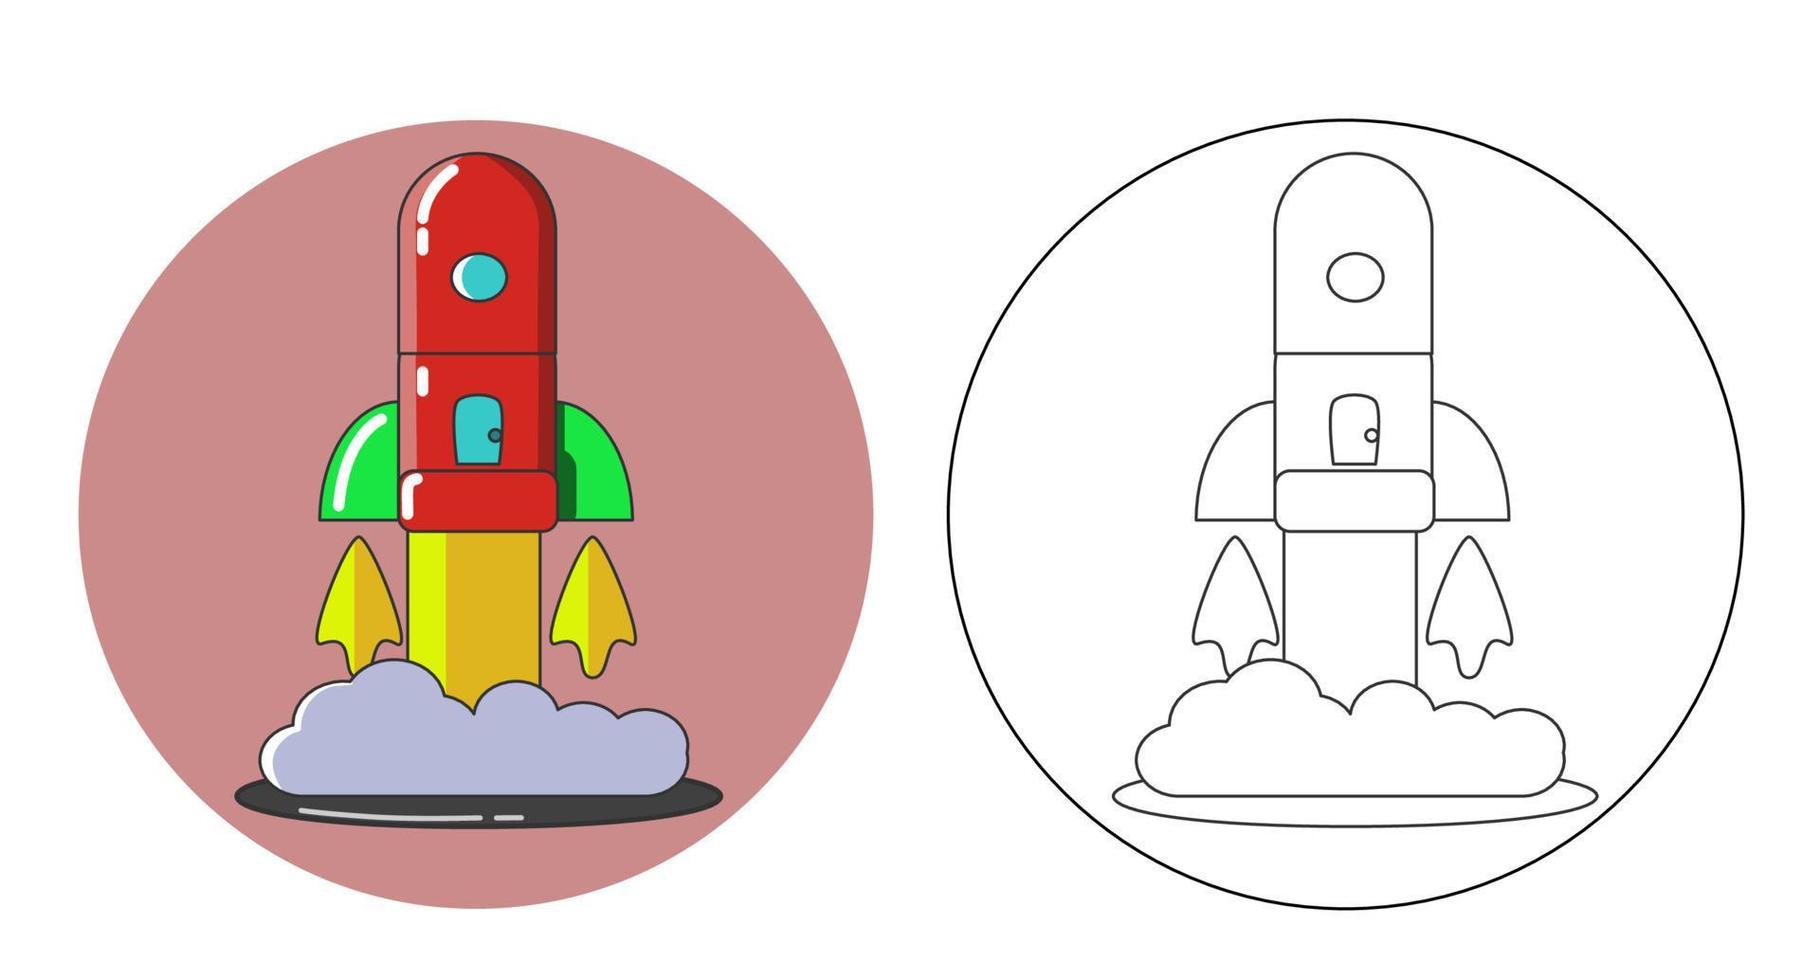 libro de colorear. dibujos animados clipart nave espacial cohete para niños actividad páginas para colorear. ilustración vectorial vector